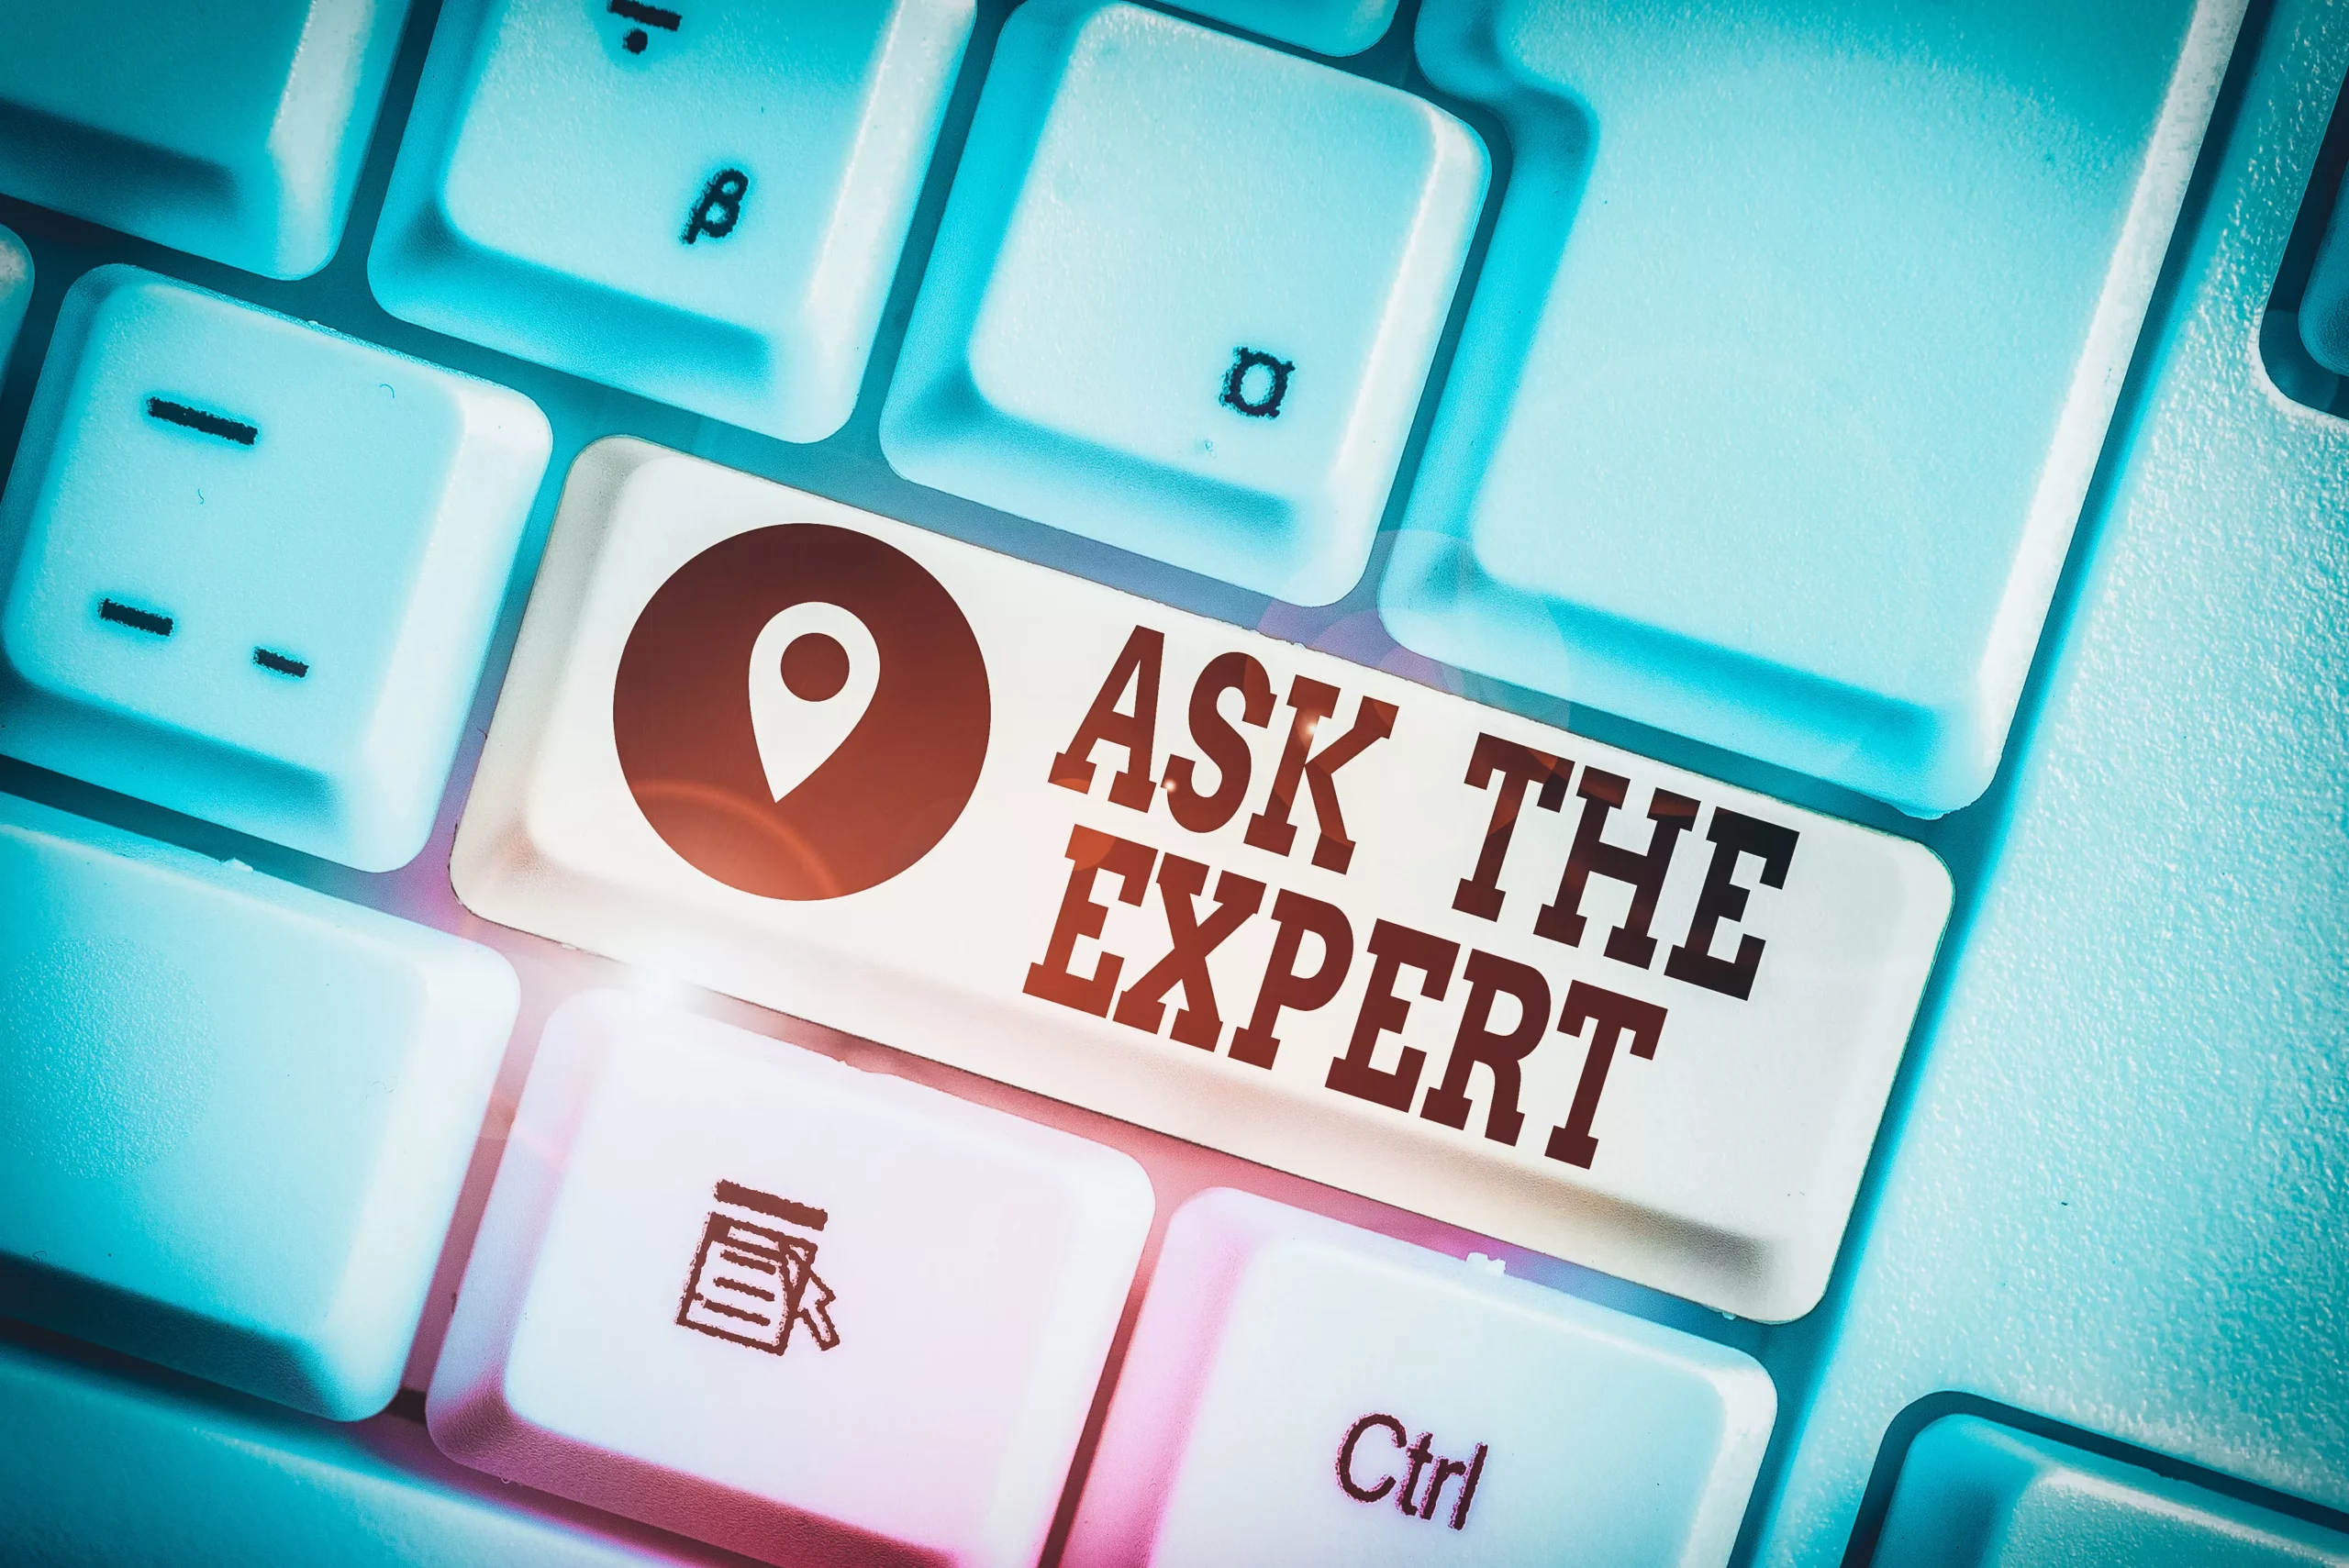 Teclado con tecla que dice: Ask the expert, servicios de TI con conocimientos